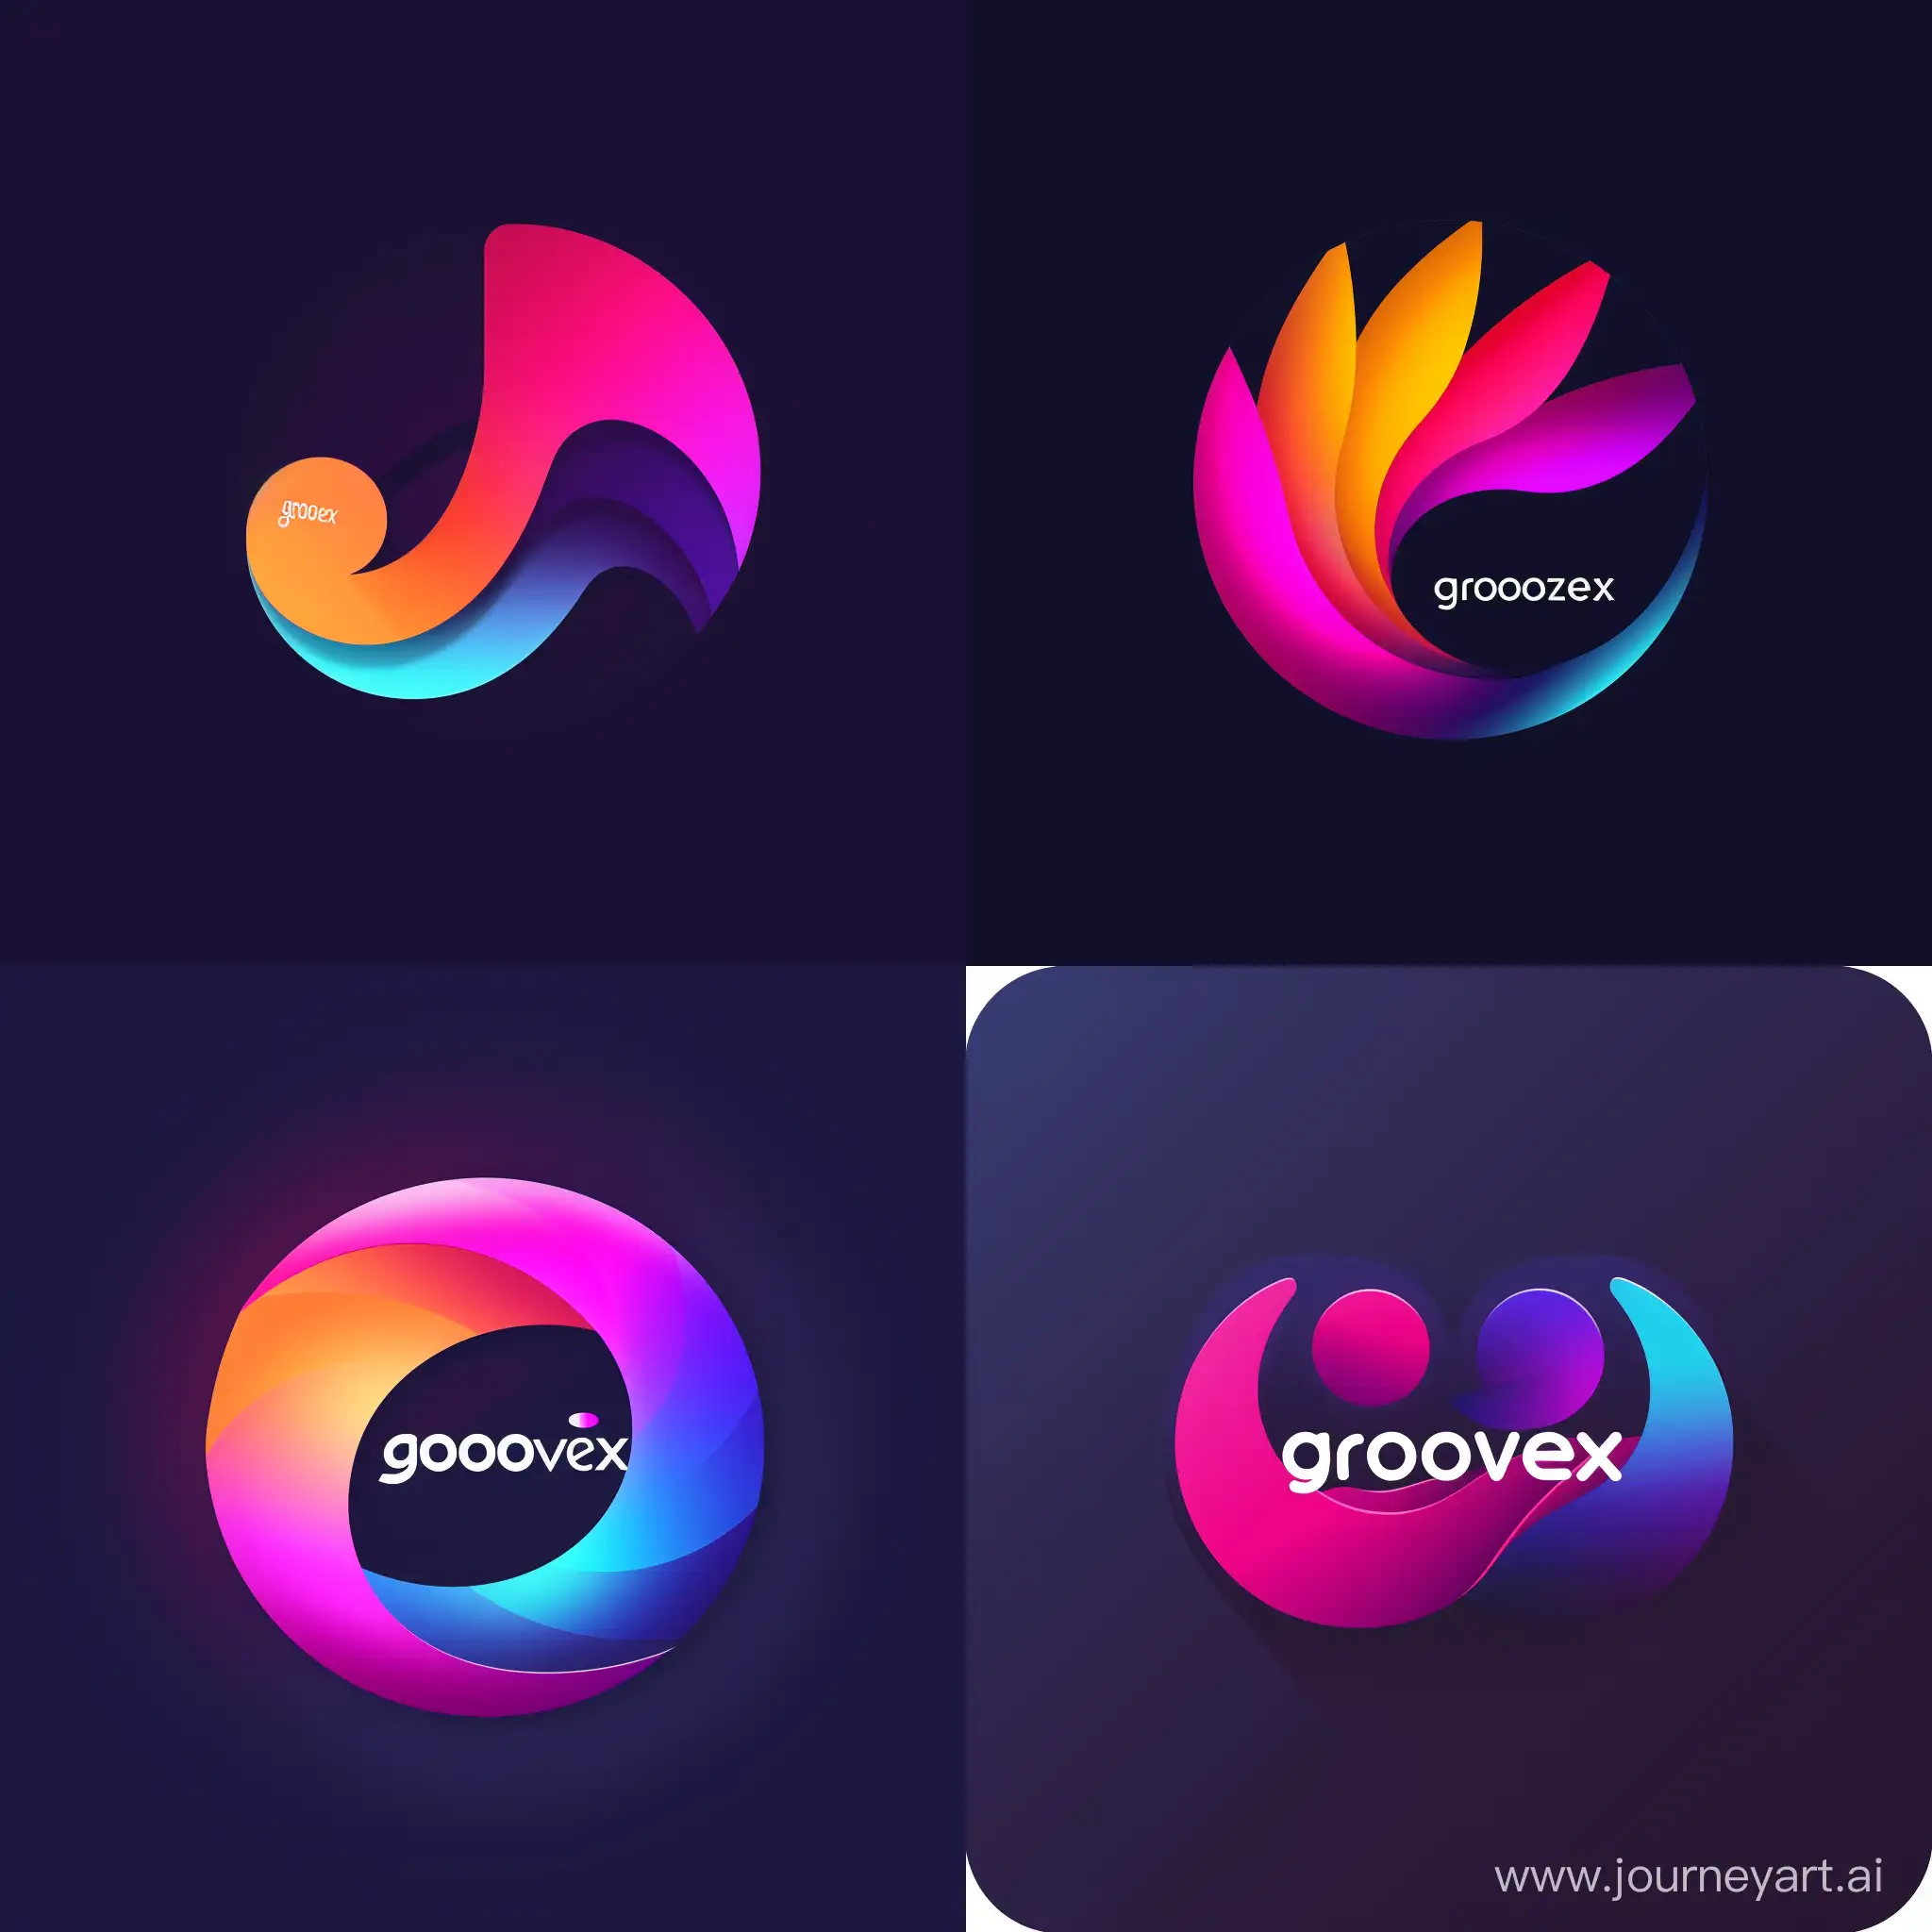 можешь придумать логотип музыкальной программы на android под названием "grooveix"